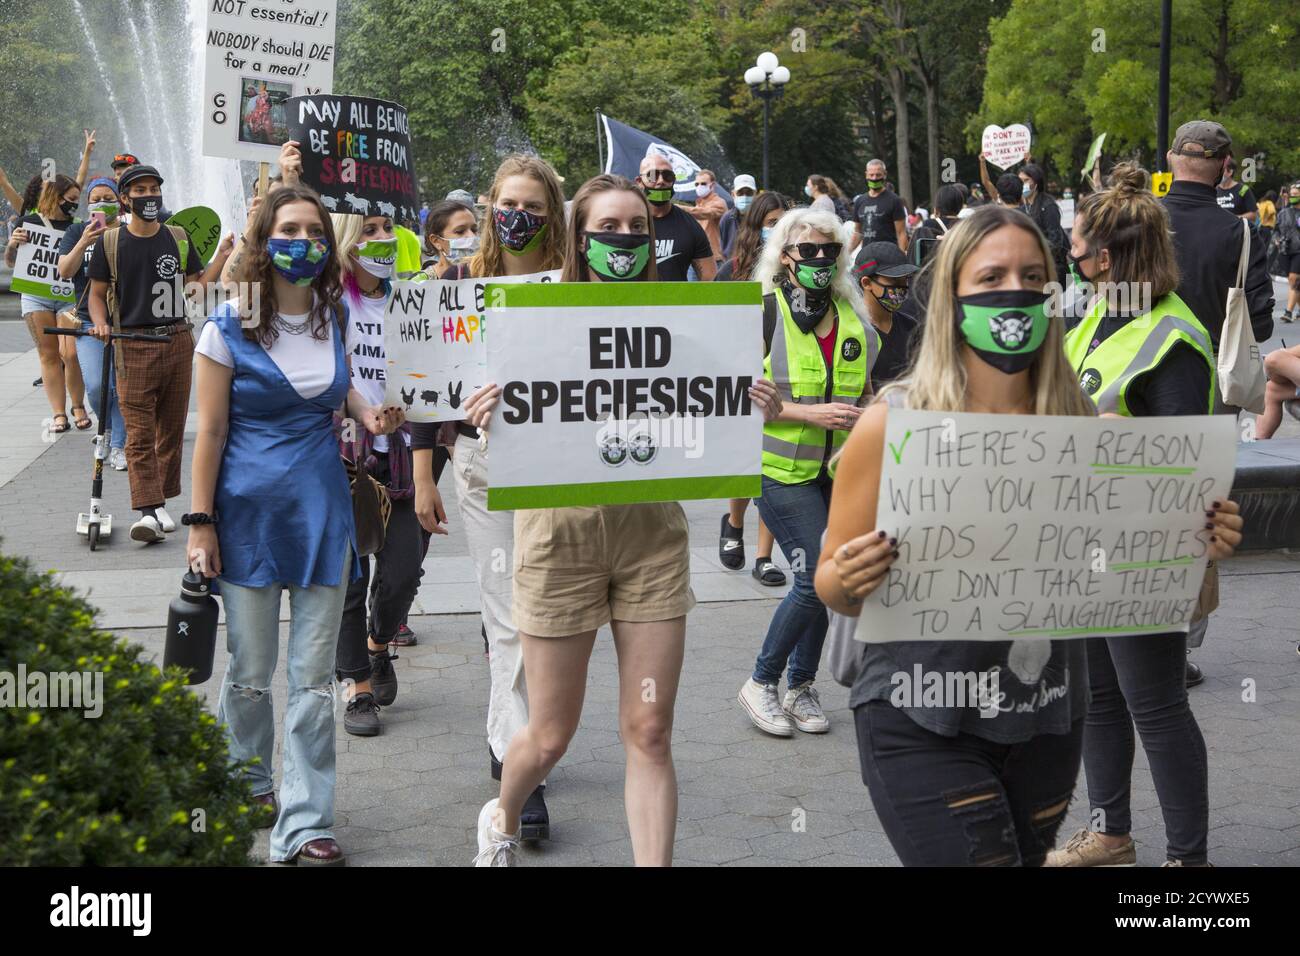 Vegane Kundgebung und marsch am Washington Square, New York City. Veganer sprechen sich für Tiere, Gesundheit, Erde und Umwelt aus. Stockfoto